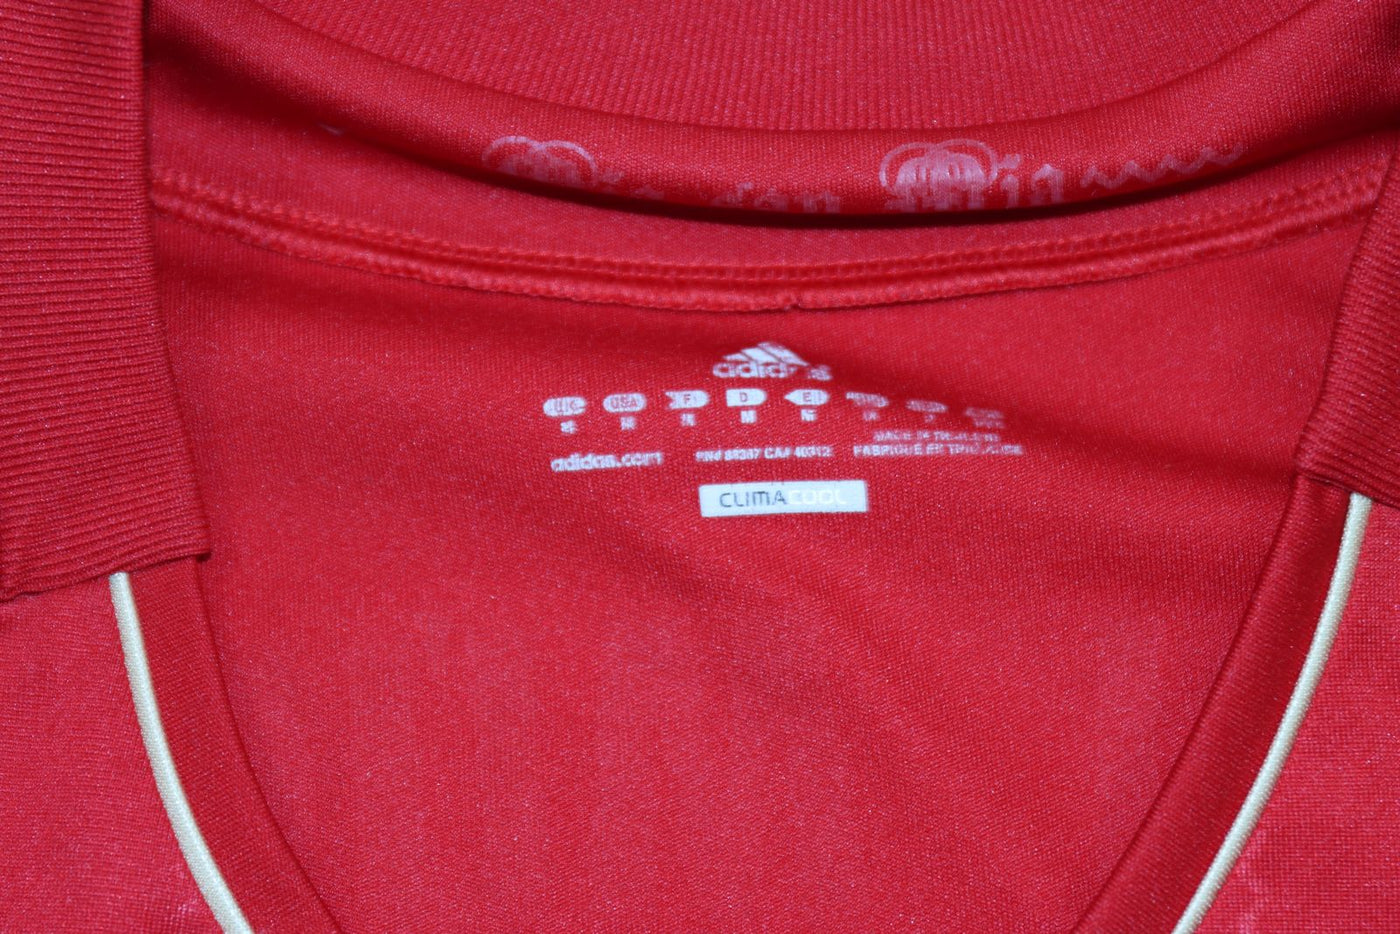 Maglia da calcio Adidas Bayern Munich 2012/2013 Schweinsteiger 31 Taglia M